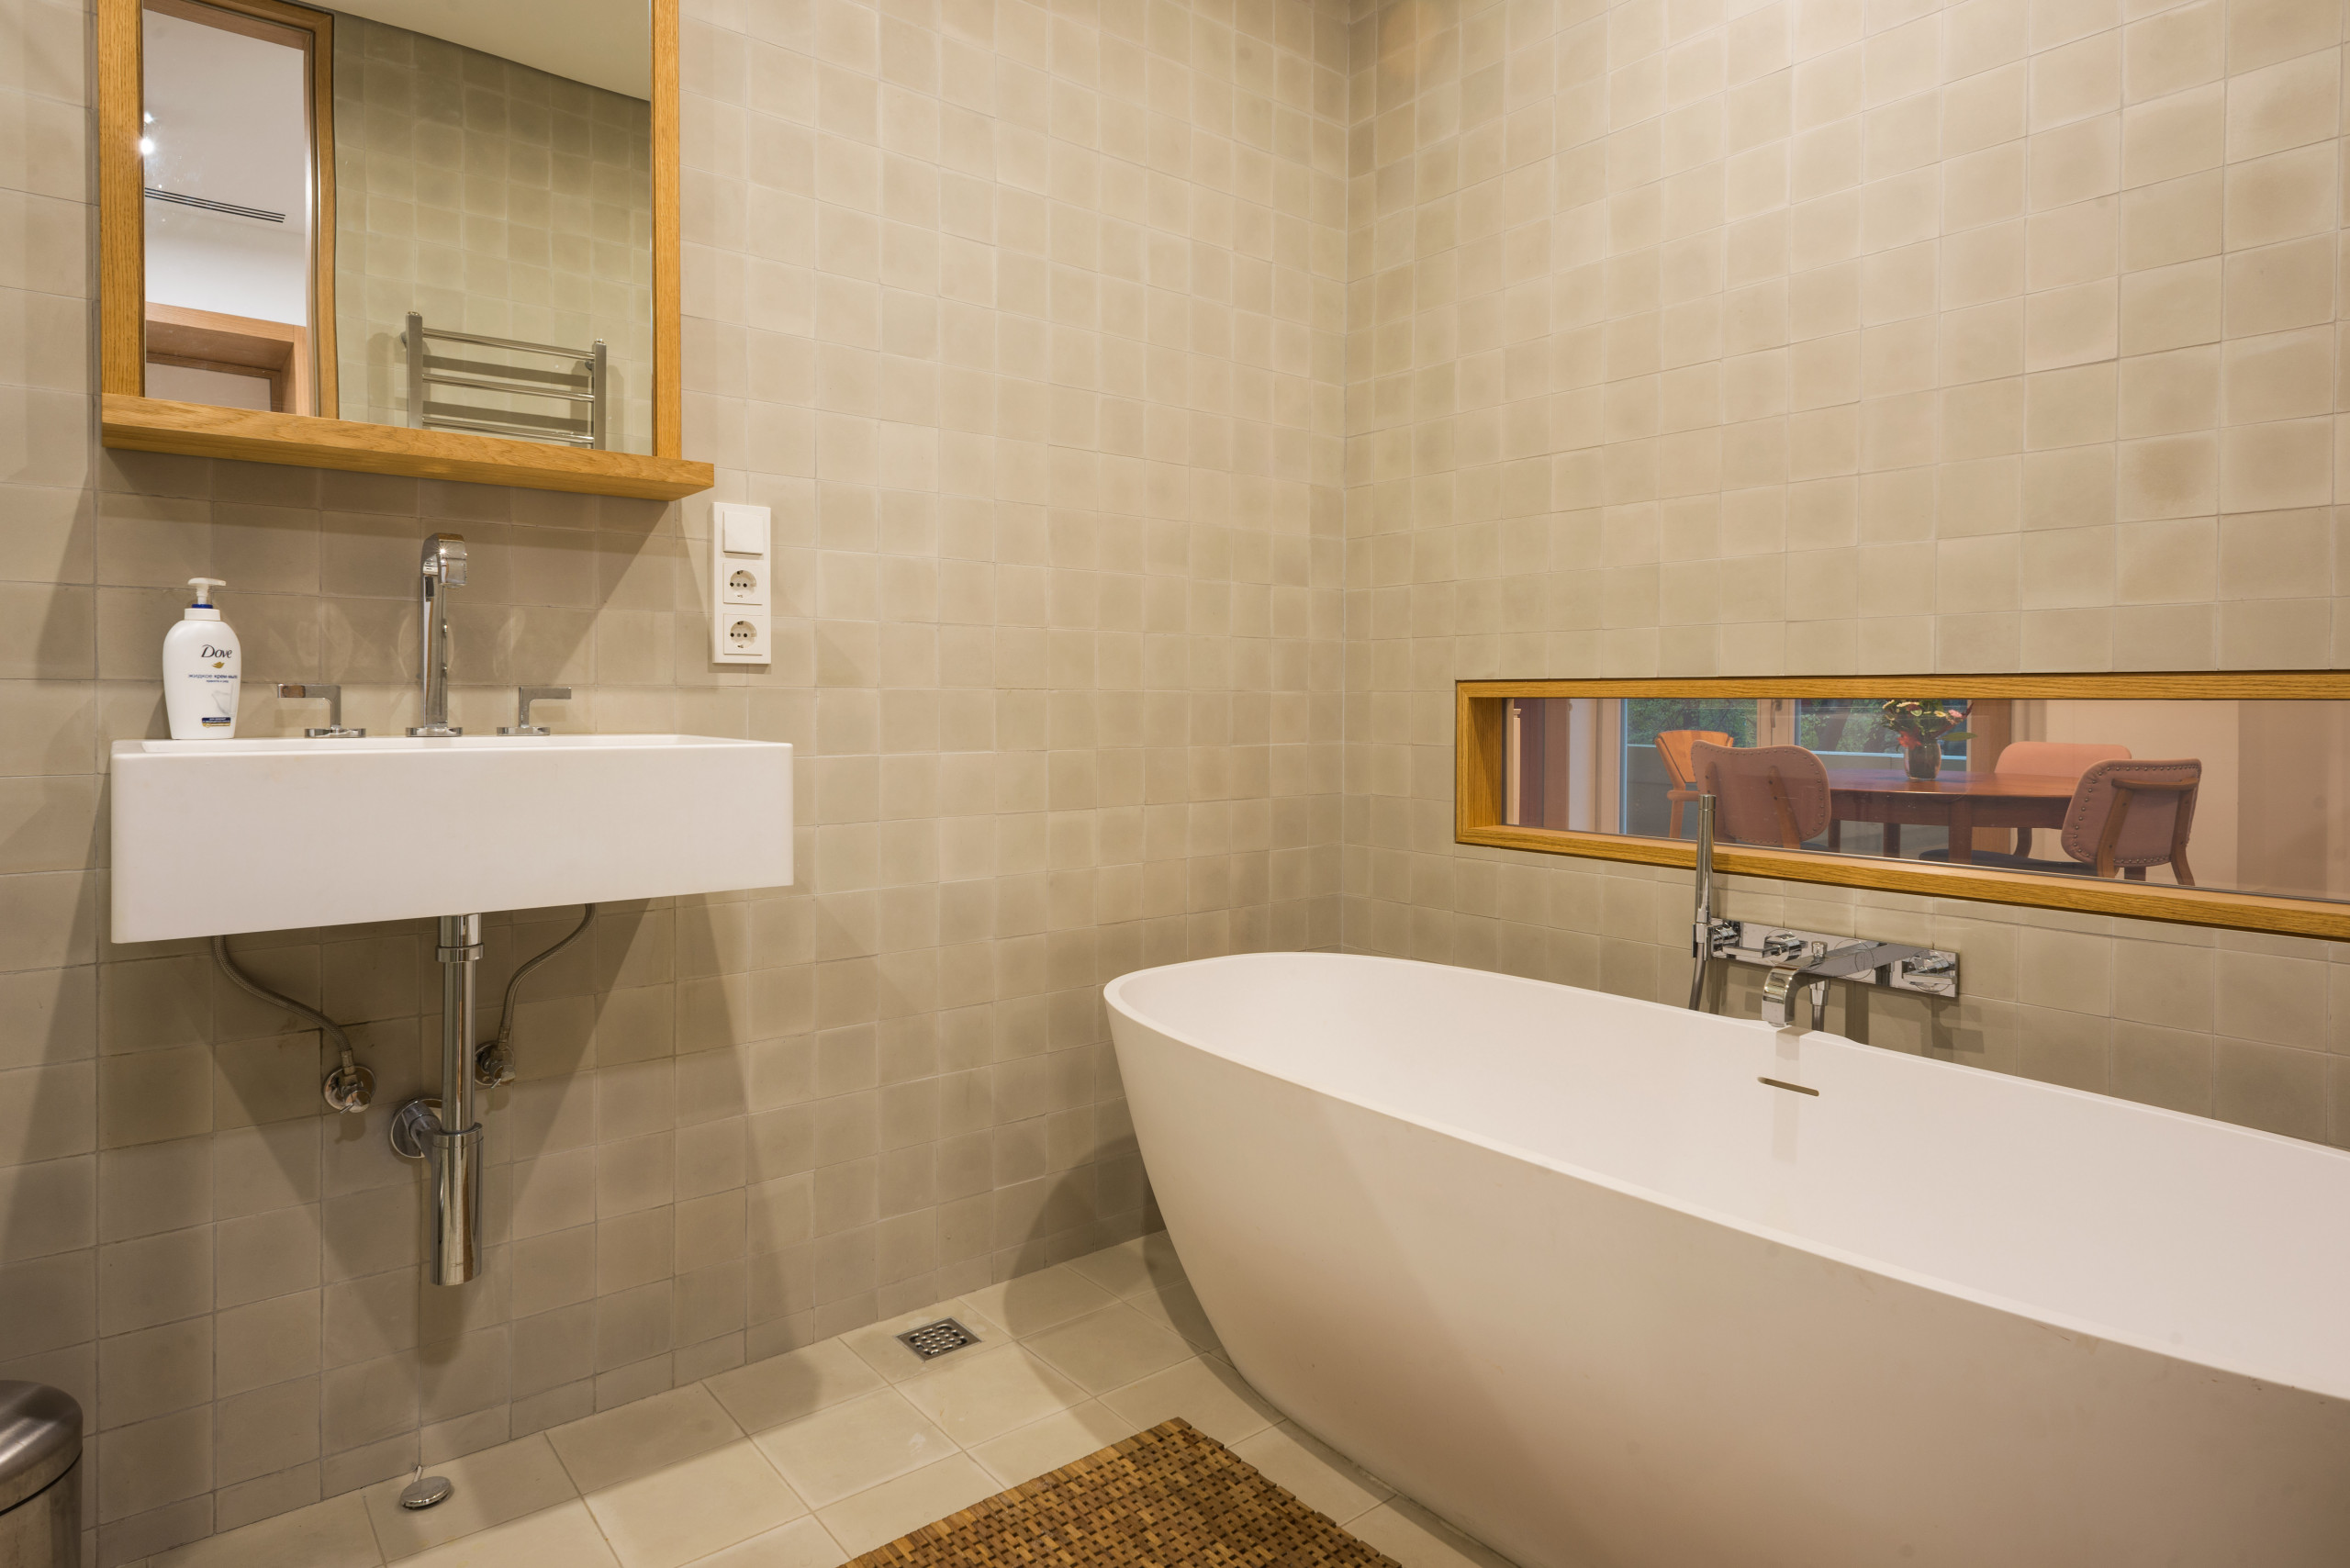 7 советов по оформлению дизайна ванной комнаты на 3 кв. метра (100+ реальных фото)